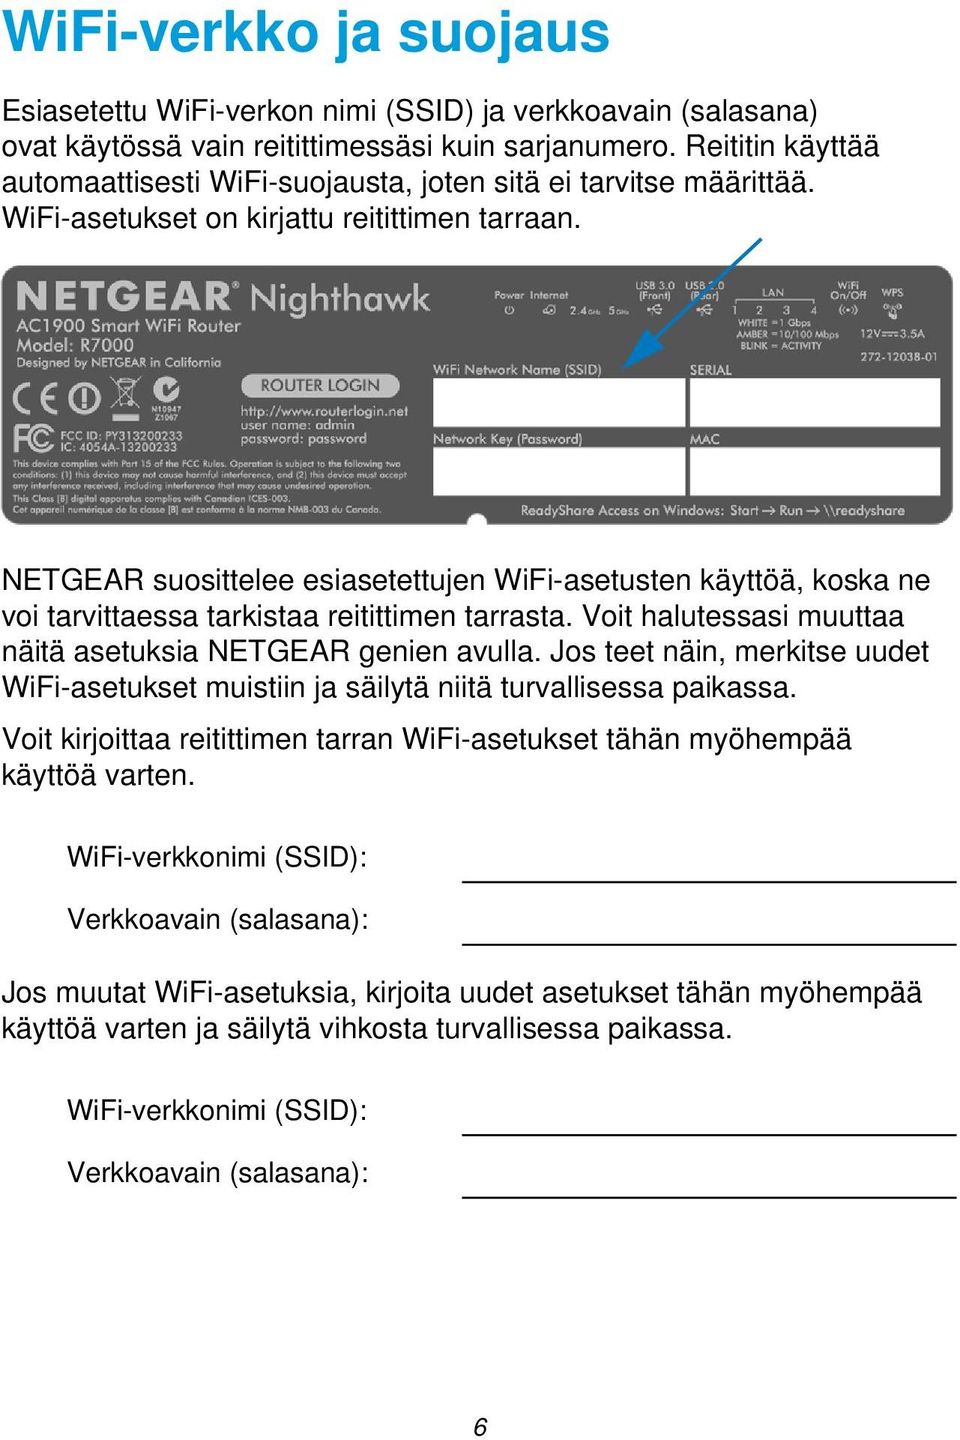 NETGEAR suosittelee esiasetettujen WiFi-asetusten käyttöä, koska ne voi tarvittaessa tarkistaa reitittimen tarrasta. Voit halutessasi muuttaa näitä asetuksia NETGEAR genien avulla.